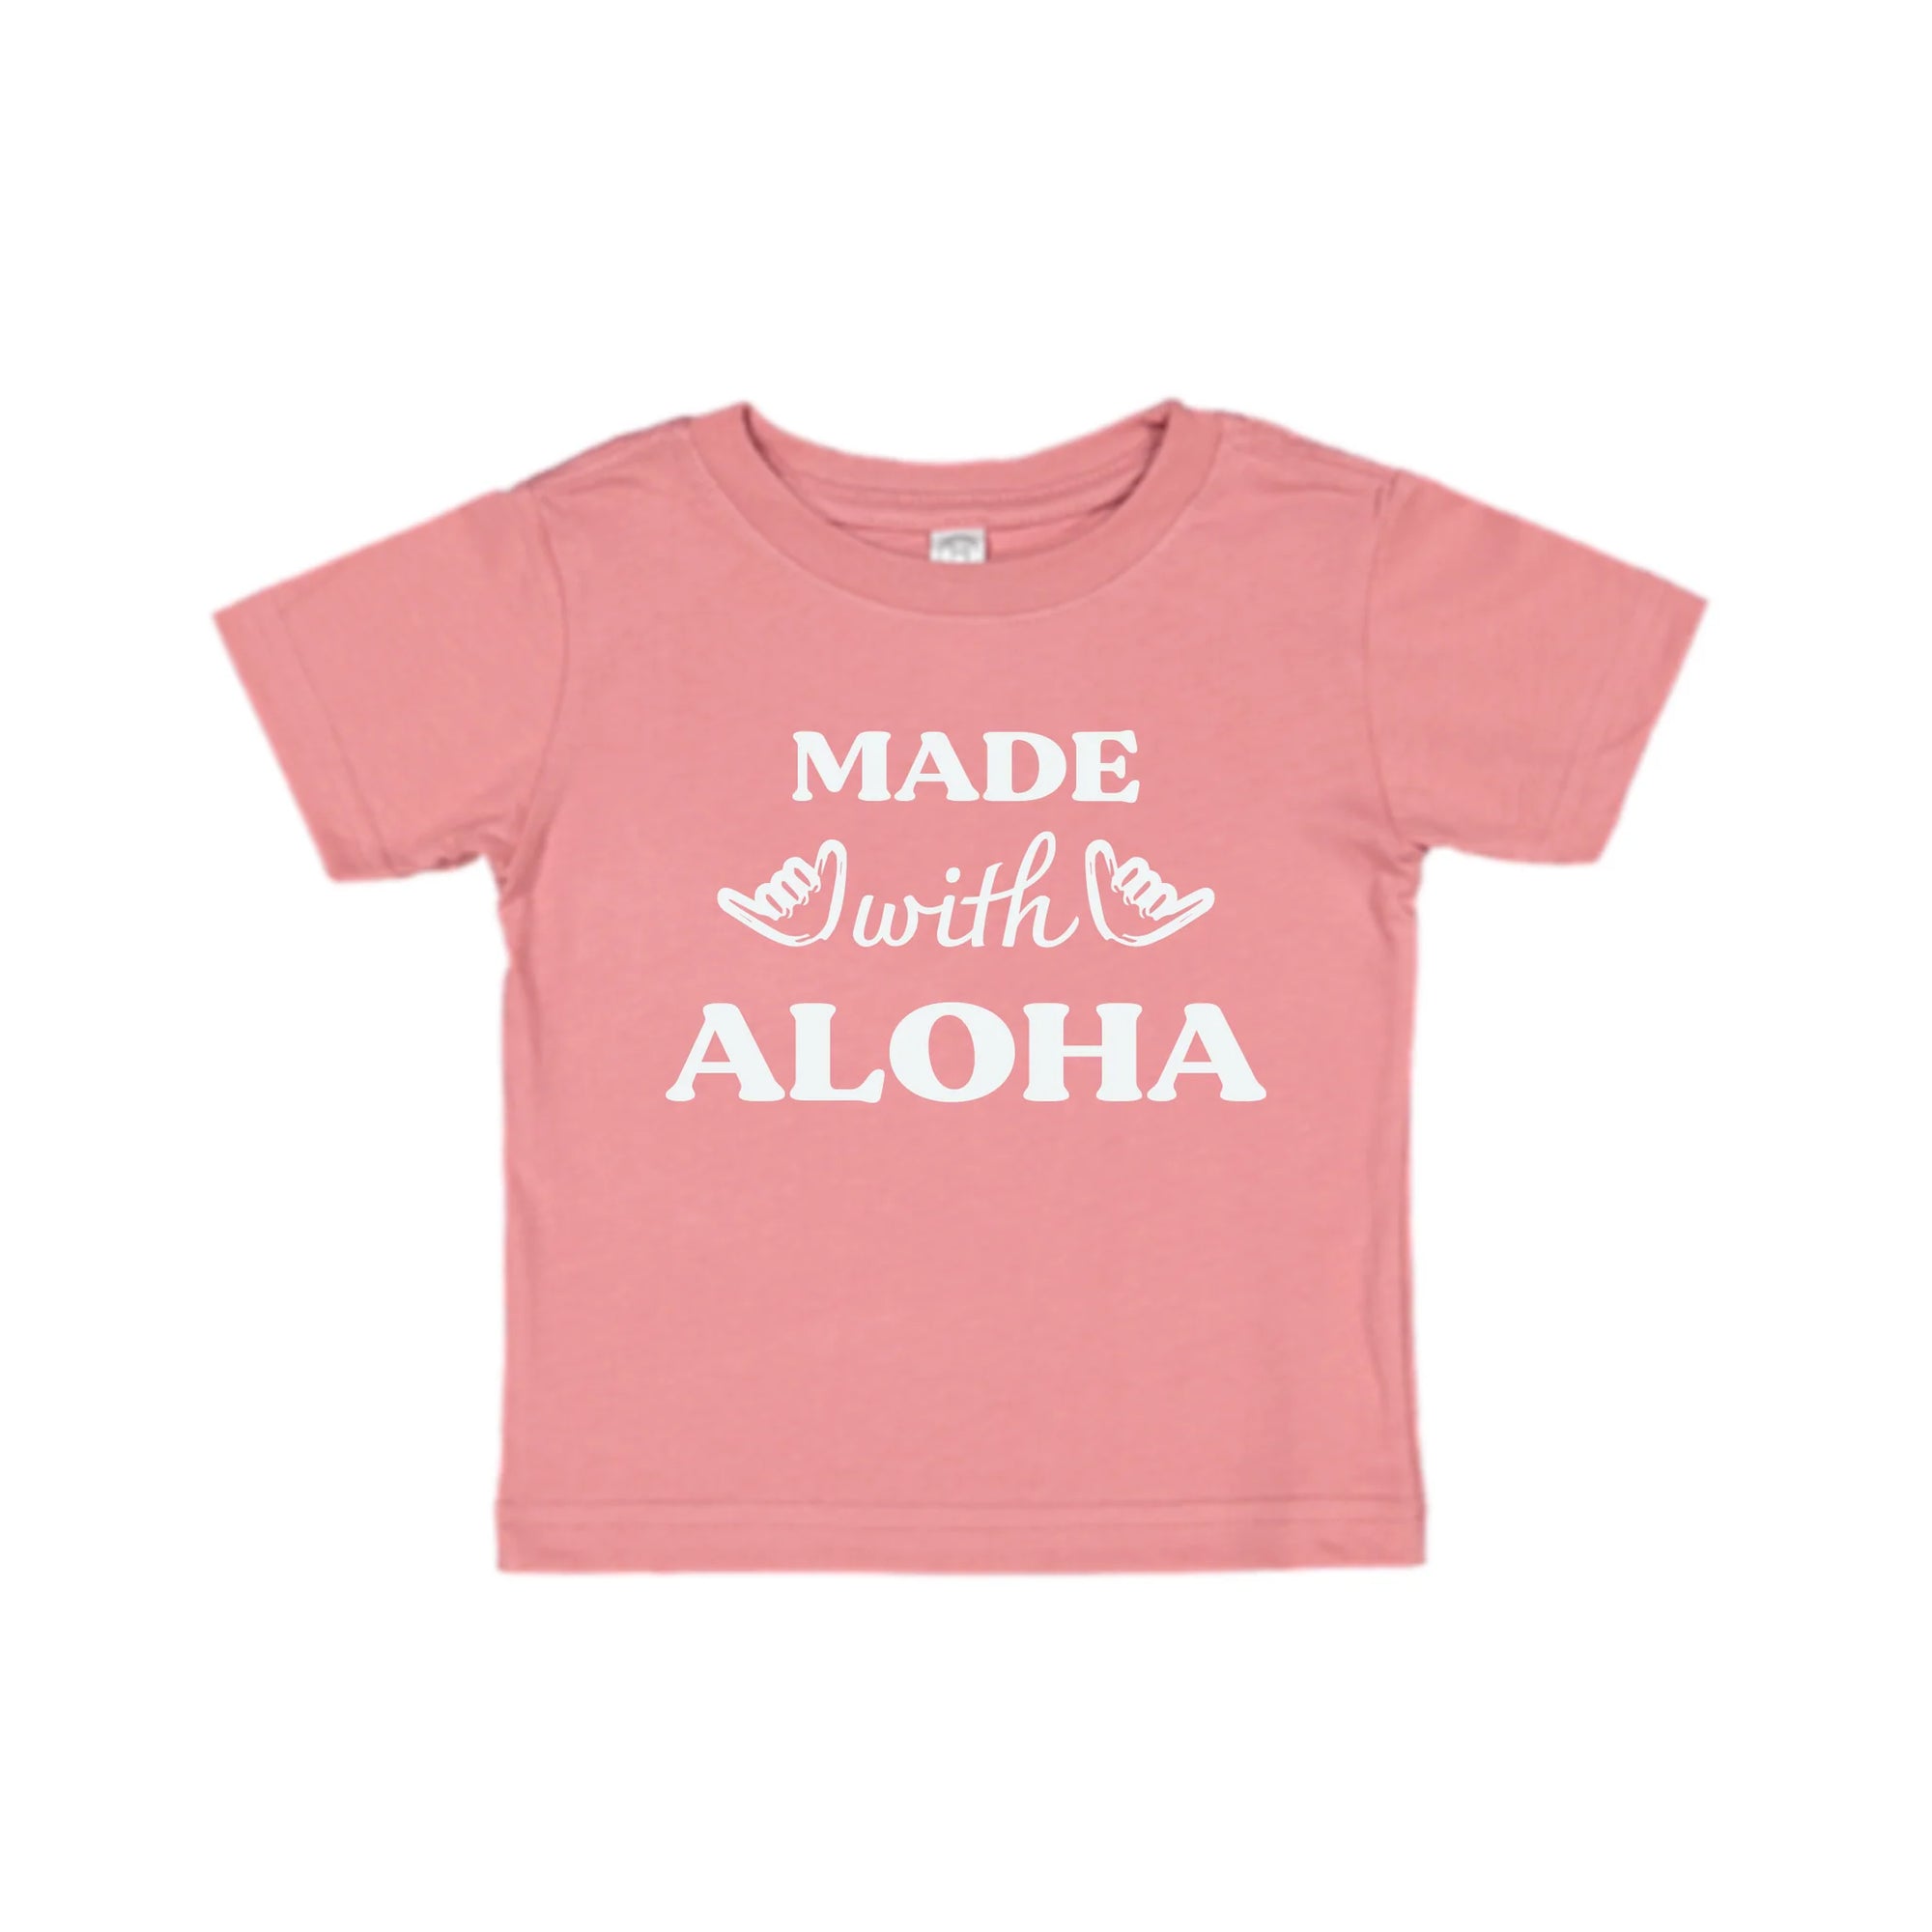 Pop-Up Mākeke - Honolulu Baby Co. - Made With Aloha Keiki T-Shirt - Mauve - Front View